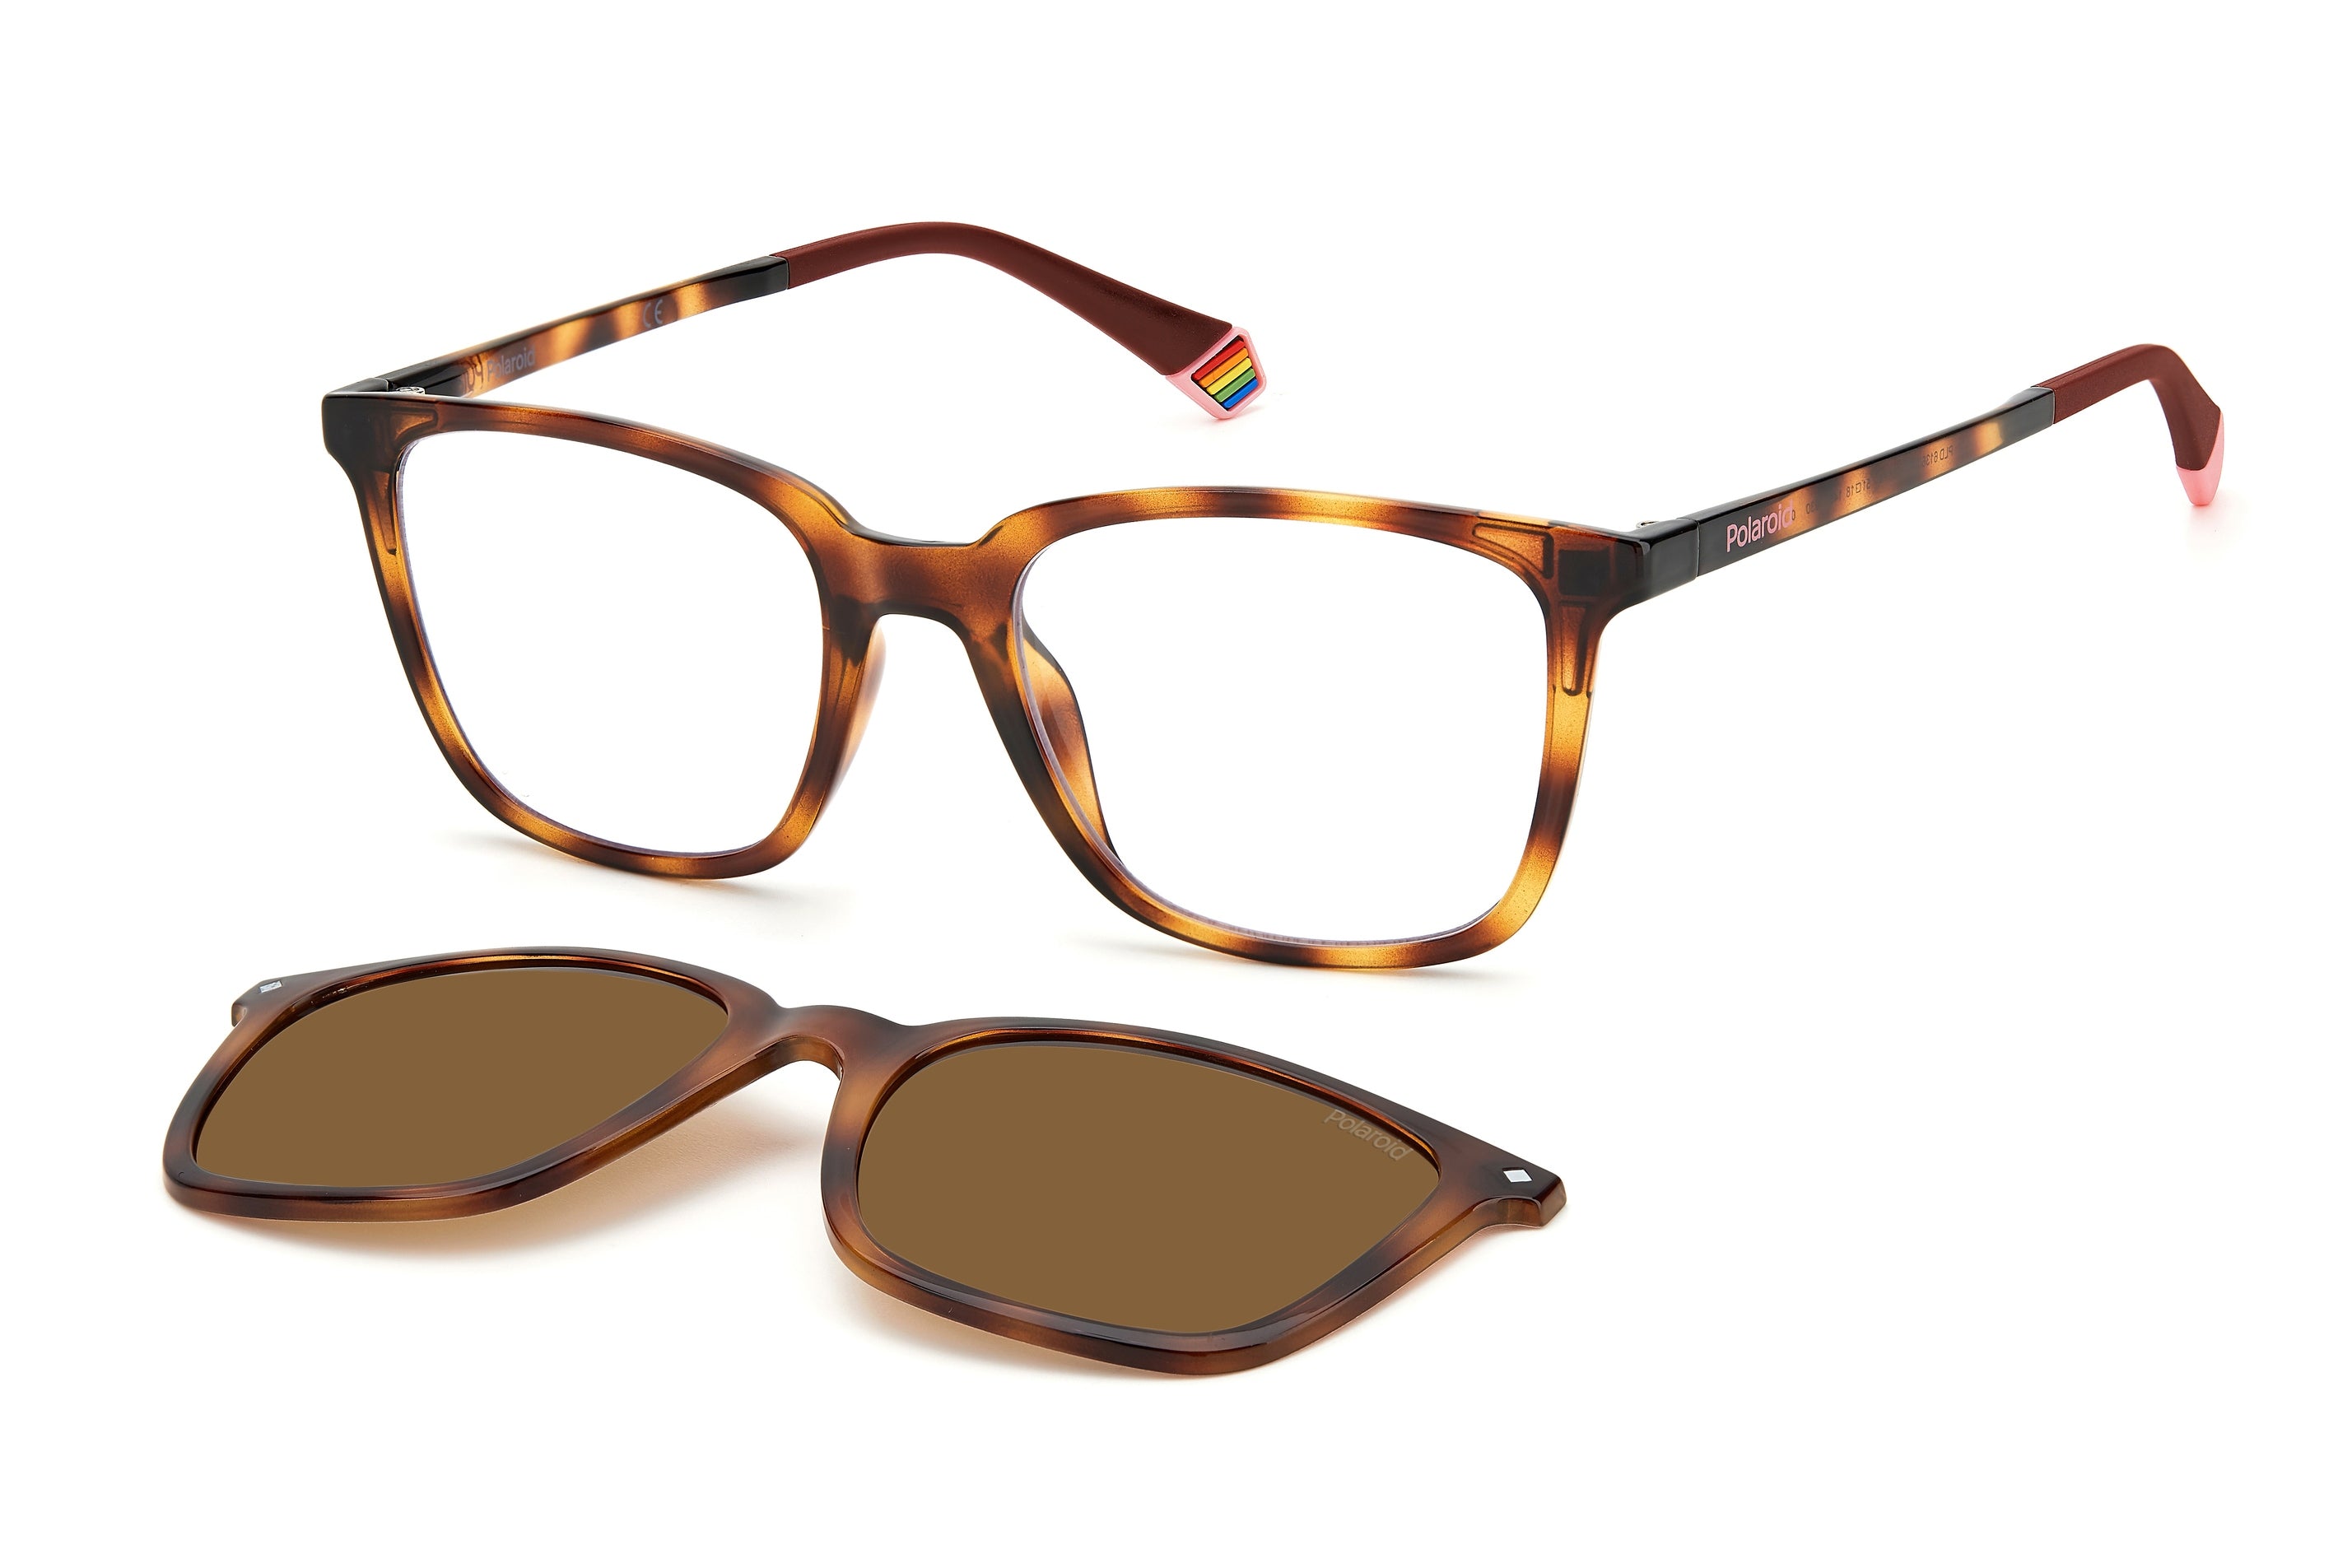 Tortoise Shell Sunglasses – Polarized Sunglasses – Sunski